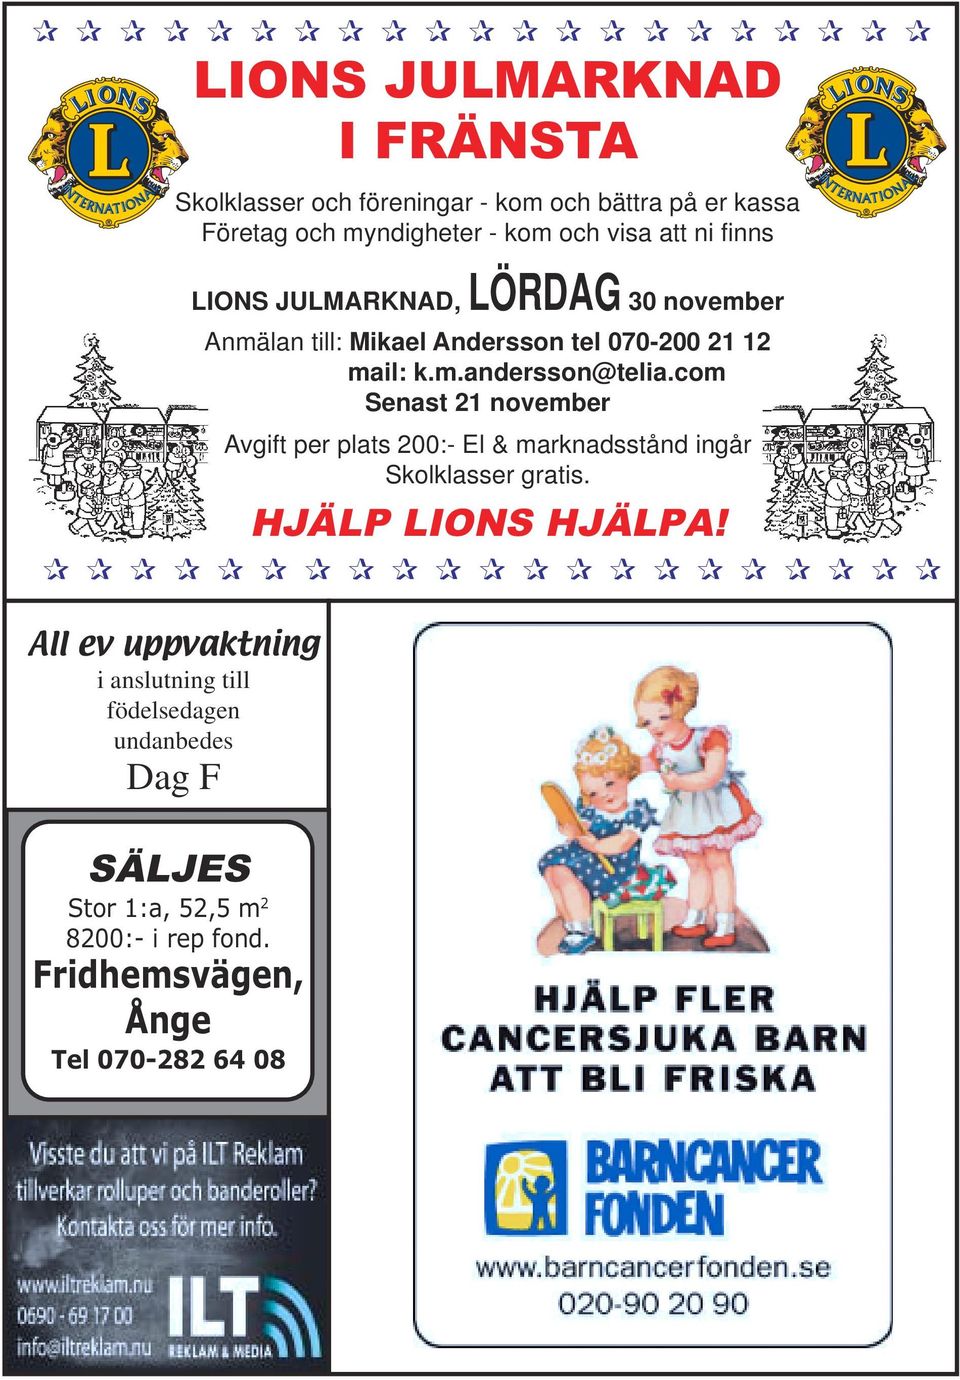 Företag och myndigheter - kom och visa att ni finns LIONS JULMARKNAD, LÖRDAG 30 november Anmälan till: Mikael Andersson tel